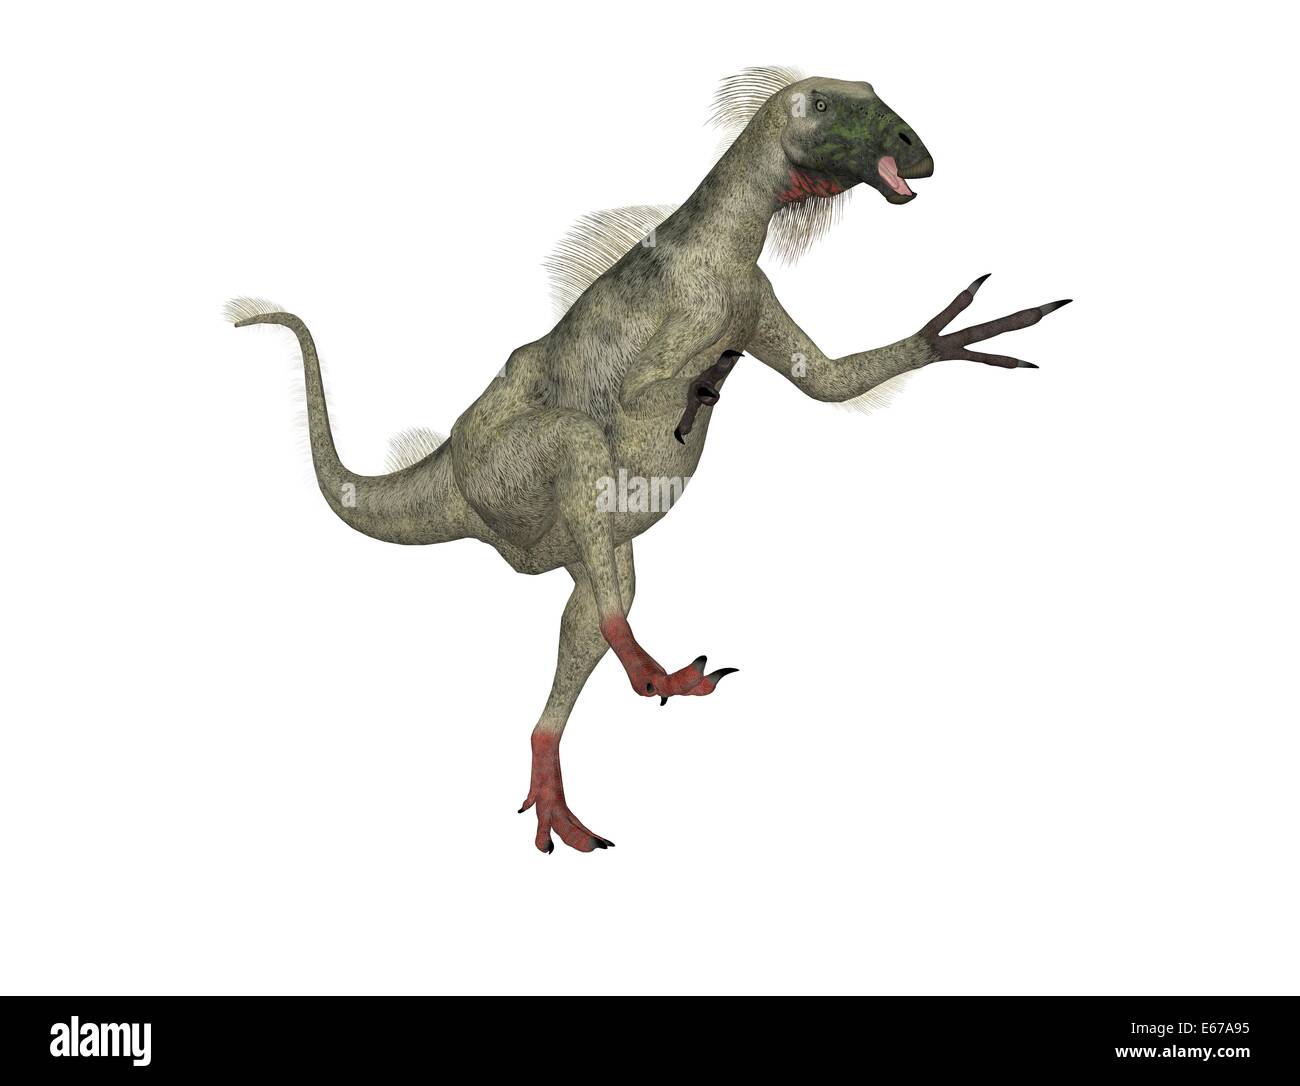 Dinosaurier Beipiaosaurus / dinosaur Beipiaosaurus Stock Photo